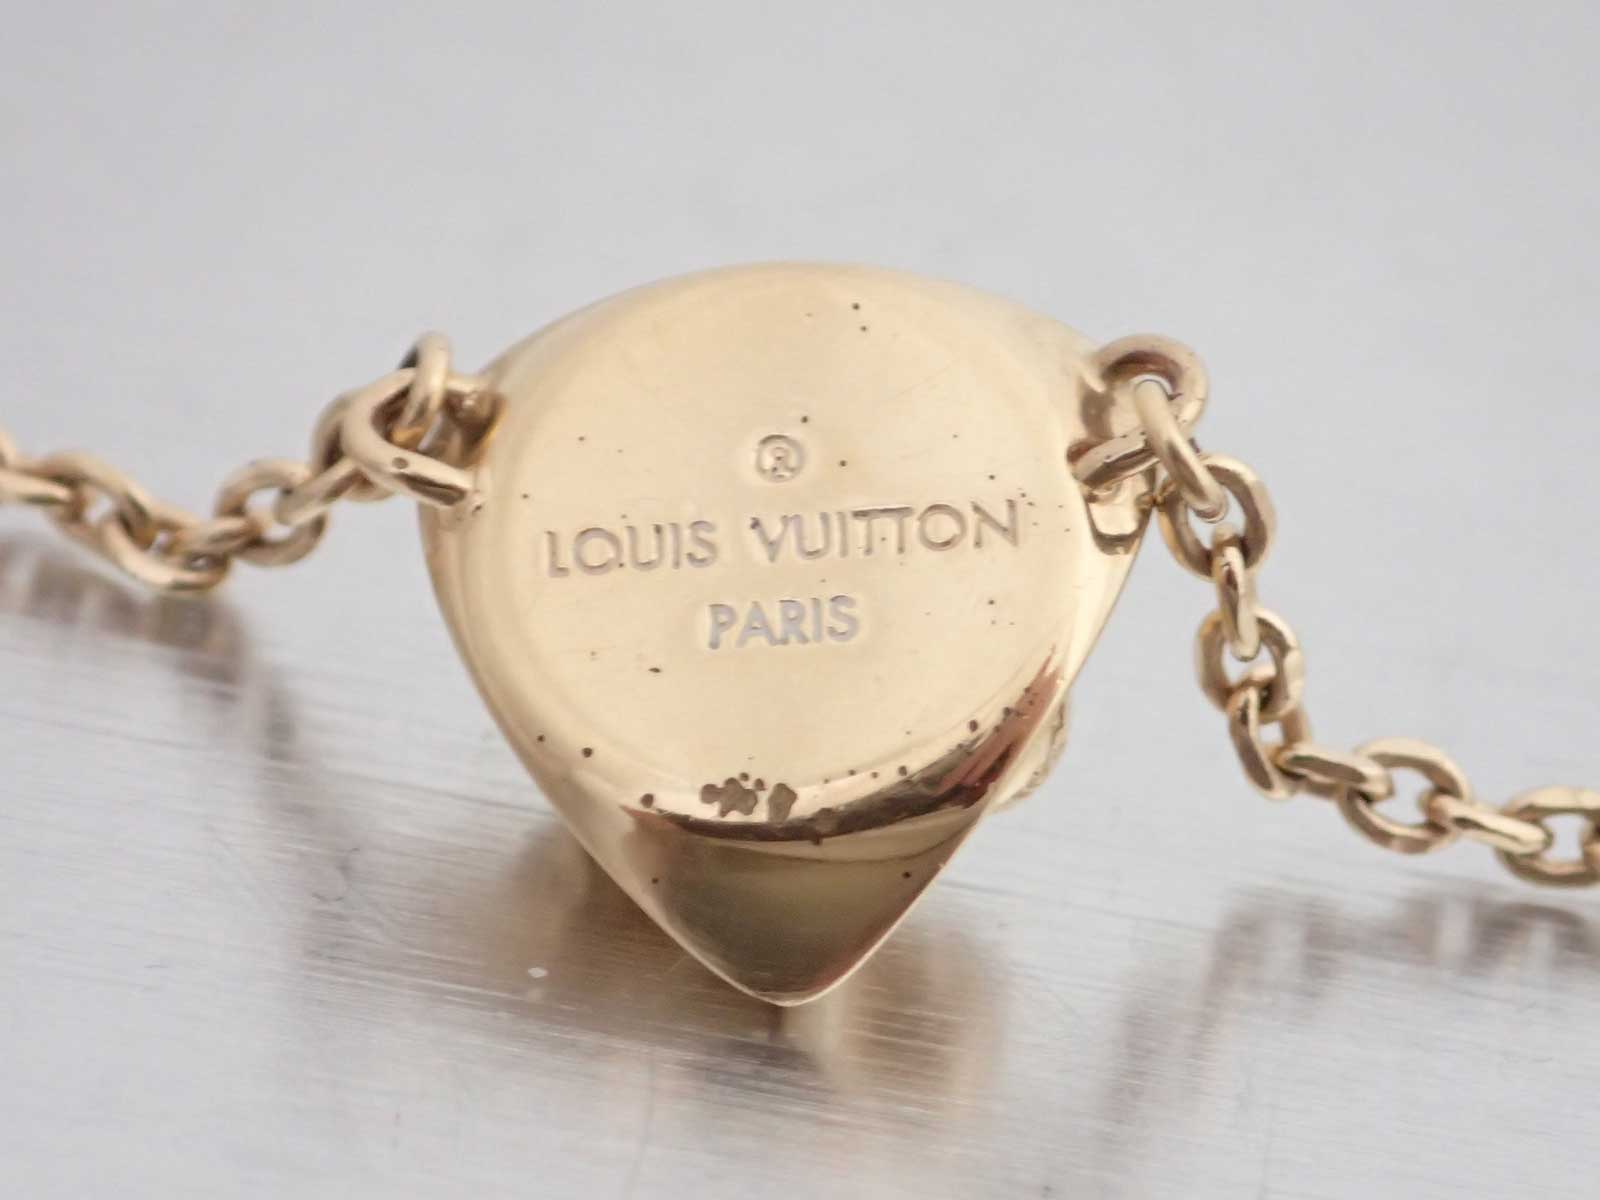 Auth Louis Vuitton Collier Trunk Chain Necklace Goldtone Metal - e44836d | eBay